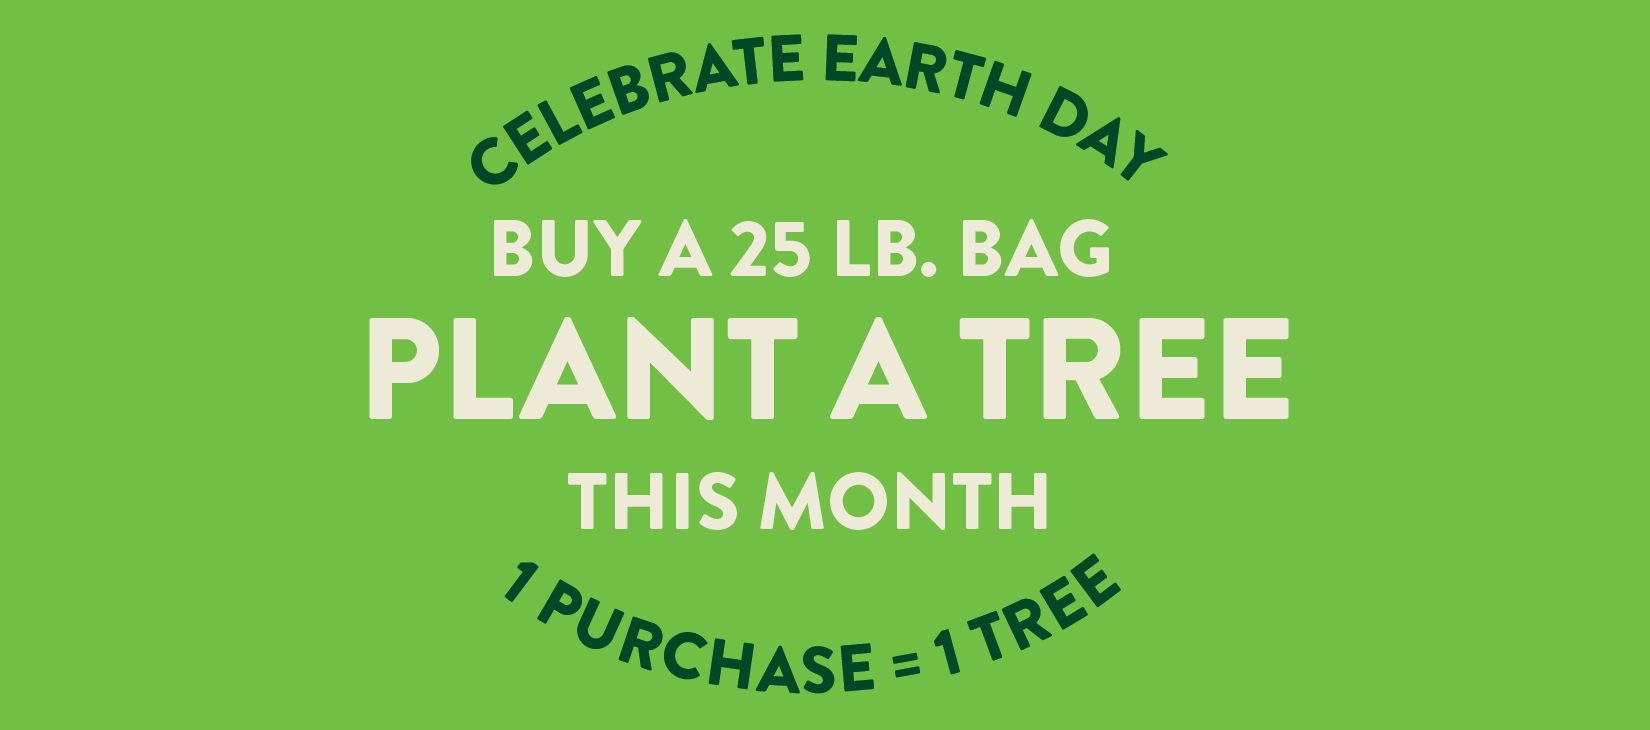 buy a 25lb bag, plant a tree